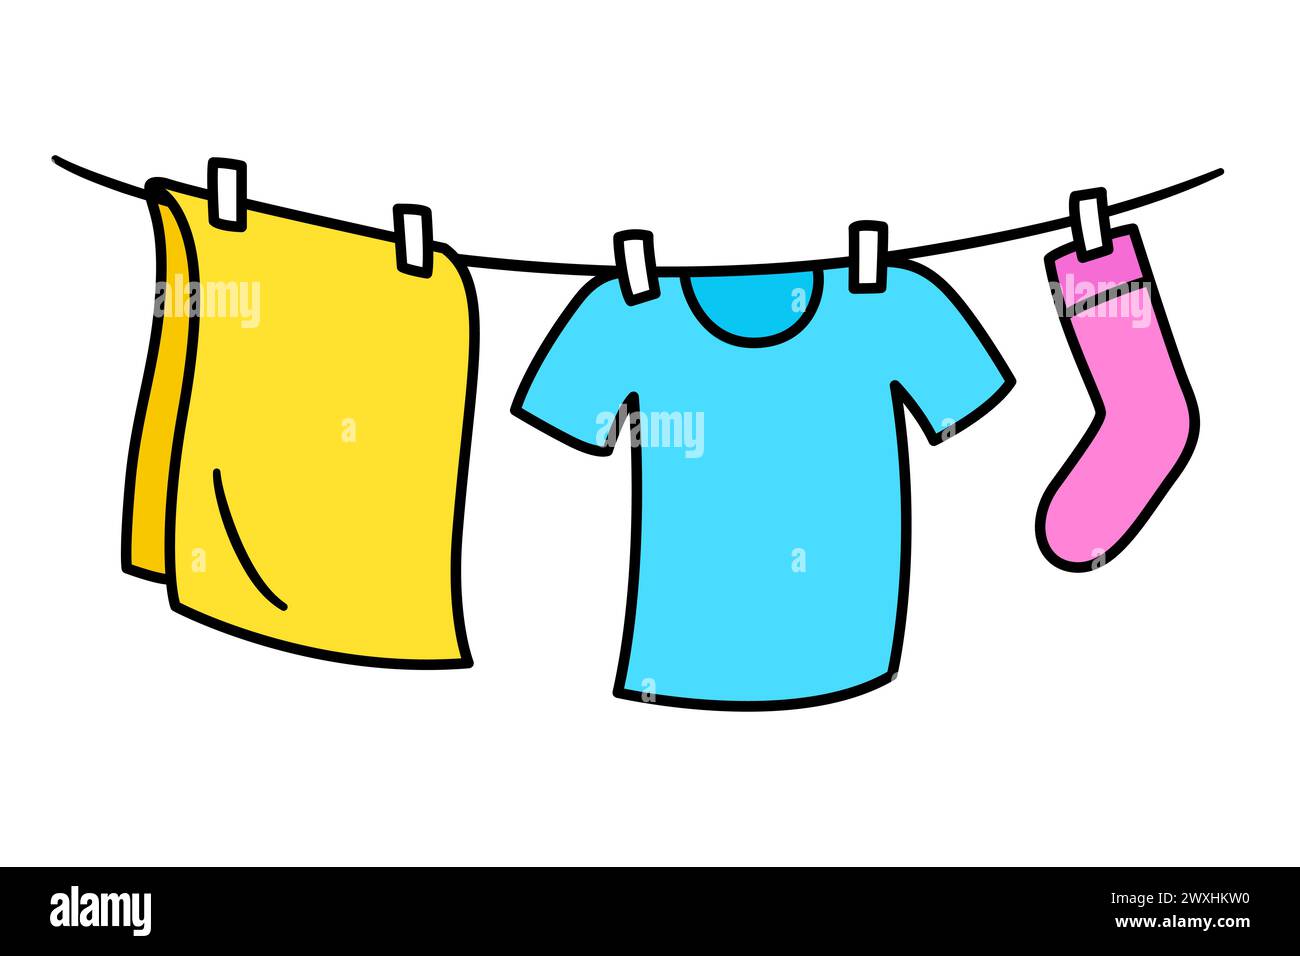 Kleidung hängt zum Trocknen auf der Wäscheleine, einfache Doodle-Zeichnung. Leuchtendes Symbol für die Wäscherei in Zeichentricksachen Handgezeichnete Vektorgrafik. Stock Vektor